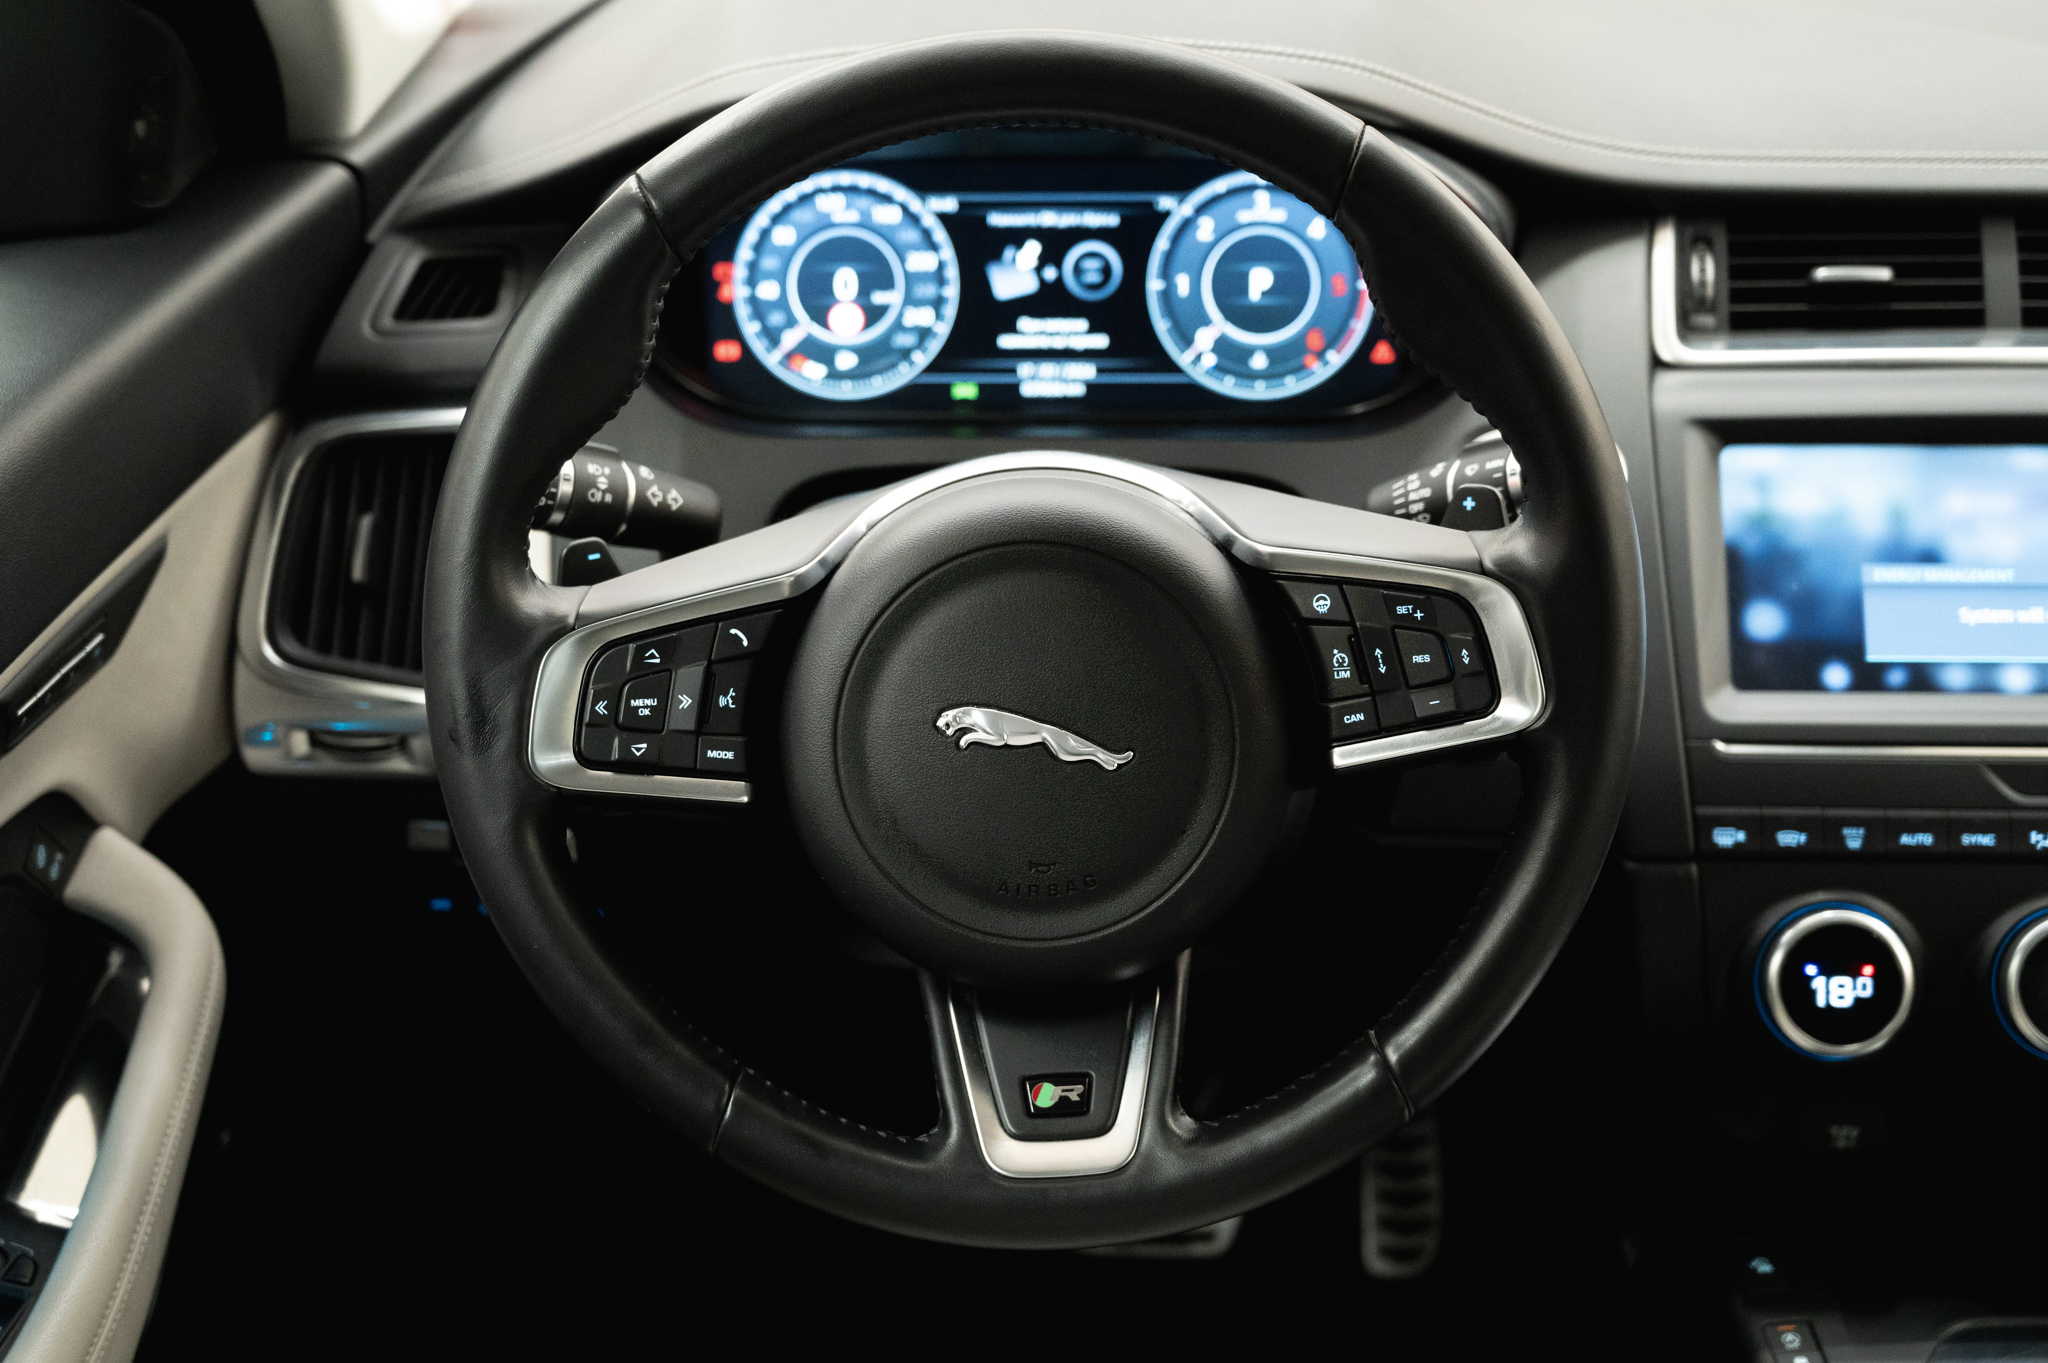 Jaguar E-Pace 2019